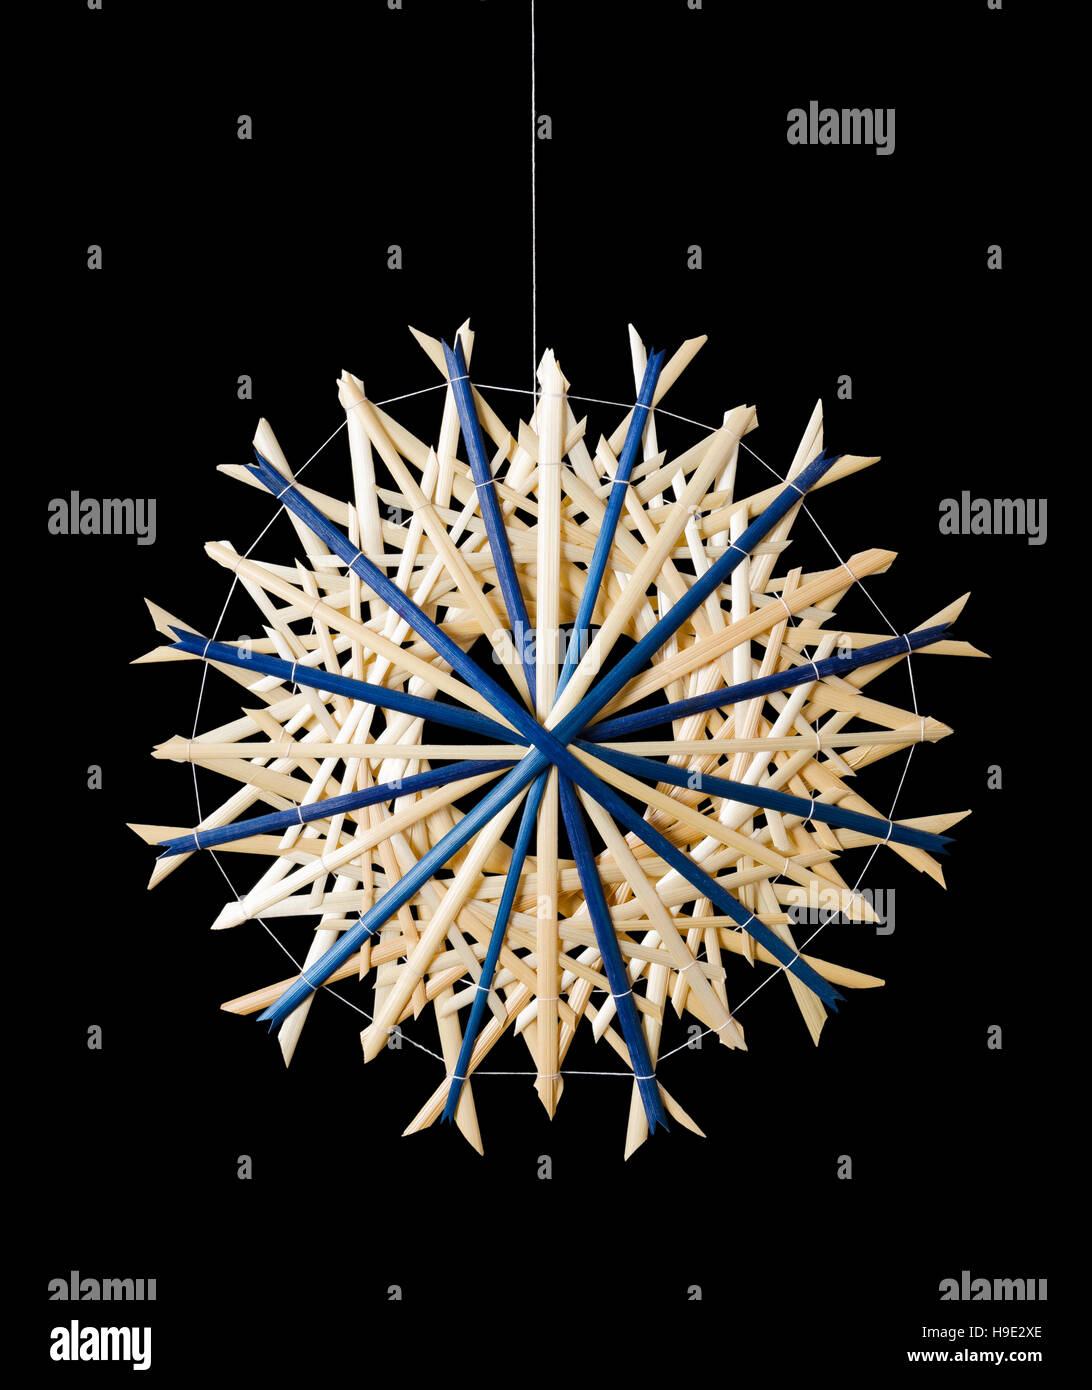 Decoración de Navidad estrella de paja azul sobre fondo negro. Decoración artesanal para windows, como regalos o para colgar en el arbol de navidad. Foto de stock